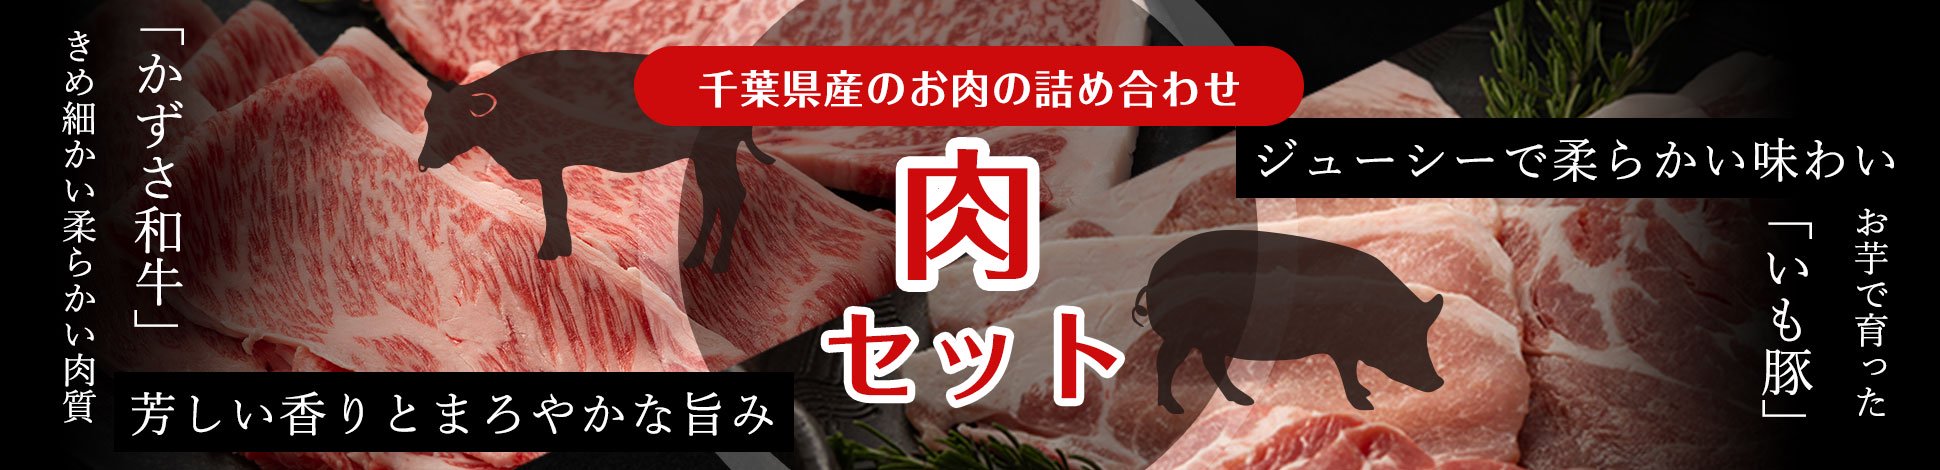 千葉県産のお肉の詰め合わせ「肉セット」